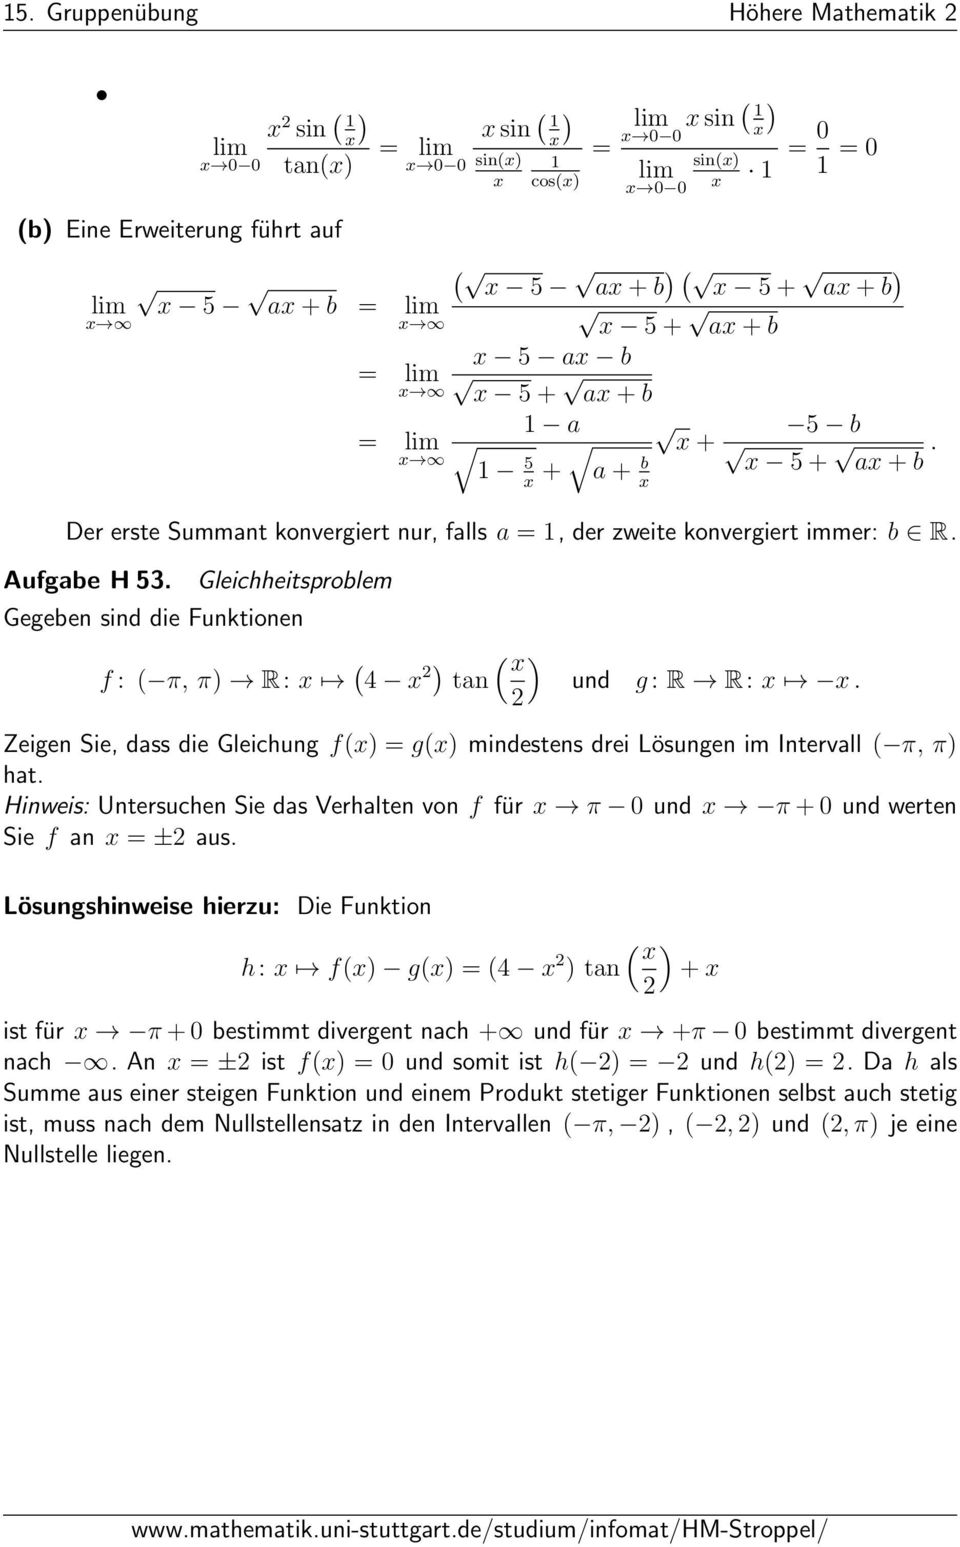 Gleichheitsproblem Gegeben sind die Funktionen f: π, π) R: x 4 x ) x tan ) und g: R R: x x. Zeigen Sie, dass die Gleichung fx) gx) mindestens drei Lösungen im Intervall π, π) hat.